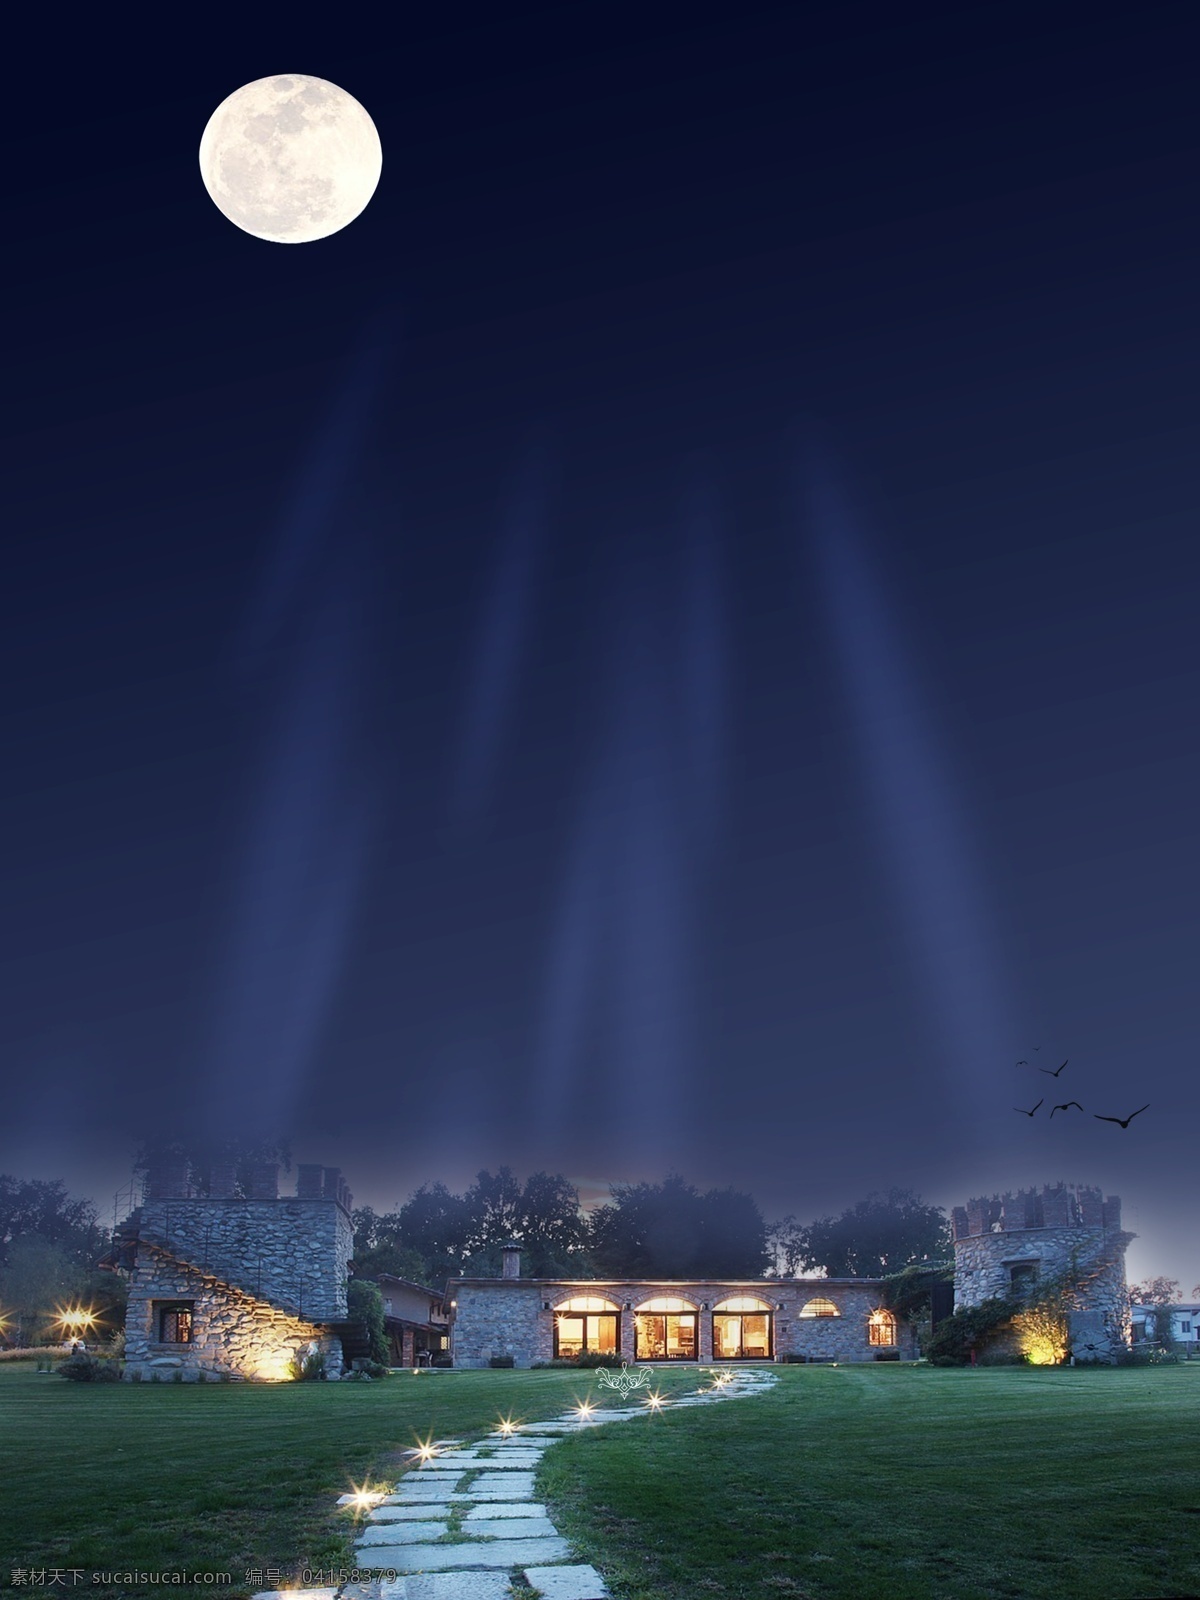 简约 大气 夜空 下 建筑物 背景 月亮 草地 背景素材 夜空背景 地产背景 广告背景